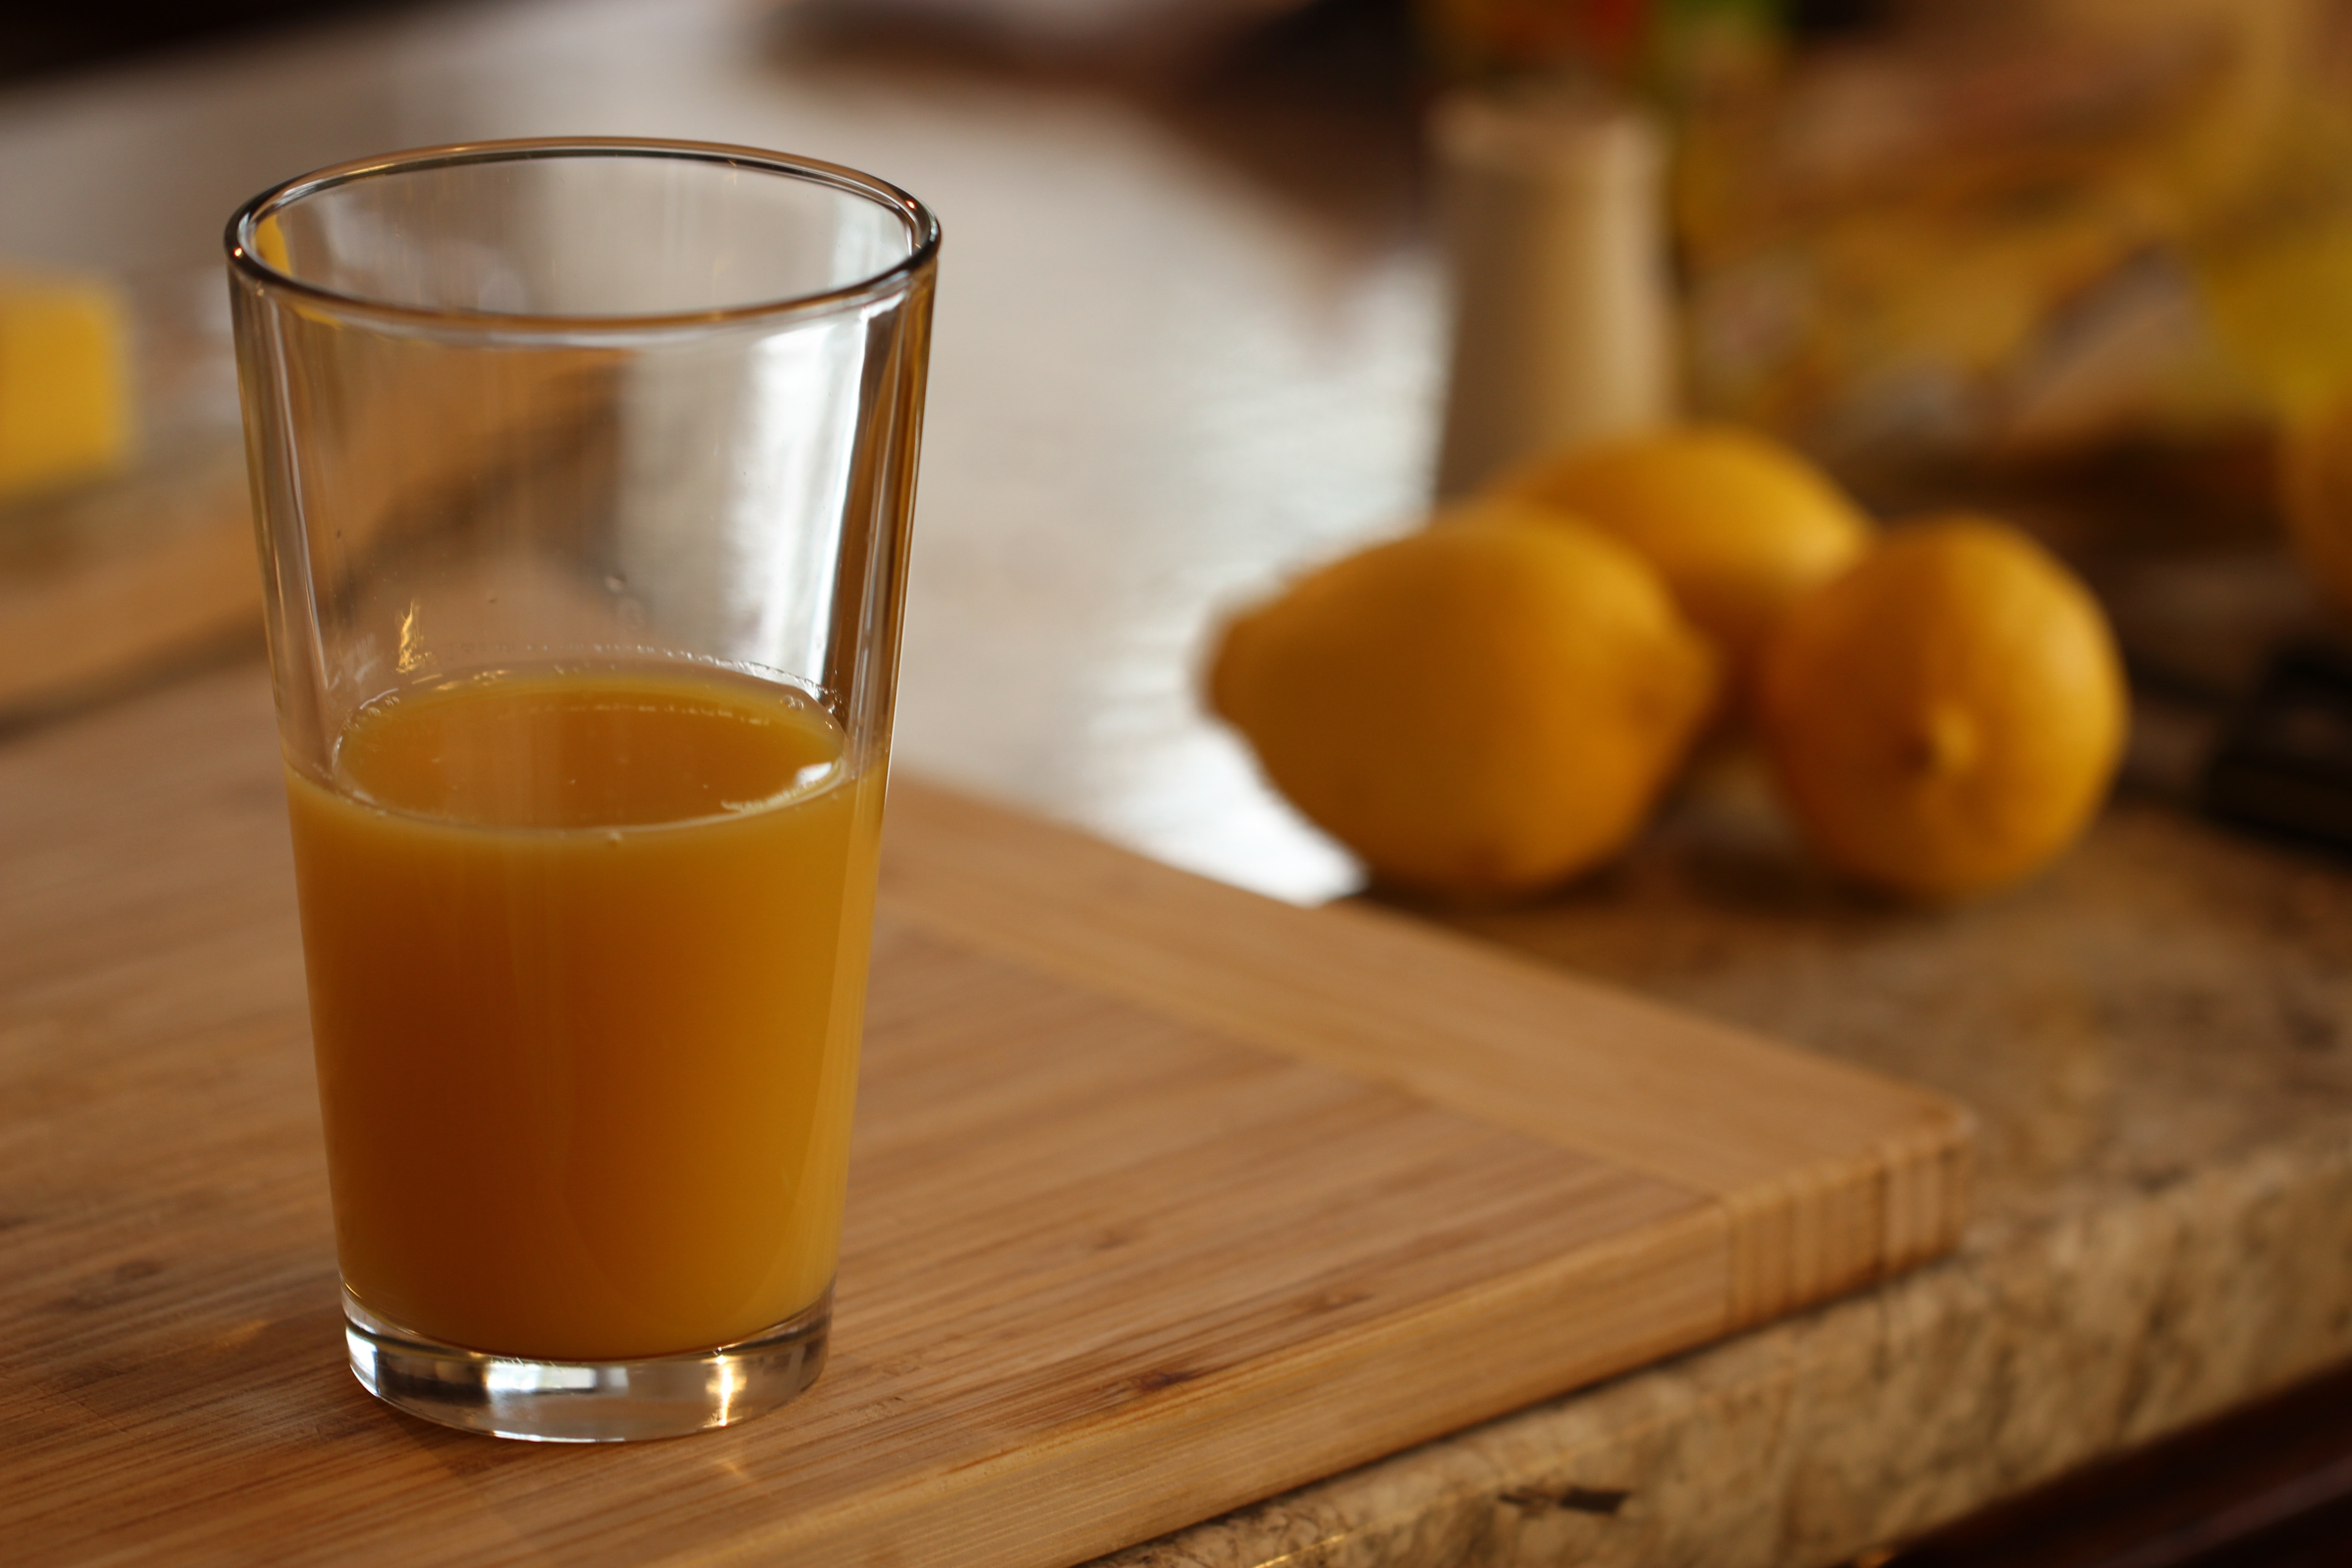 Drink, Orange, Glass, Juice, Lemon, food and drink, healthy eating